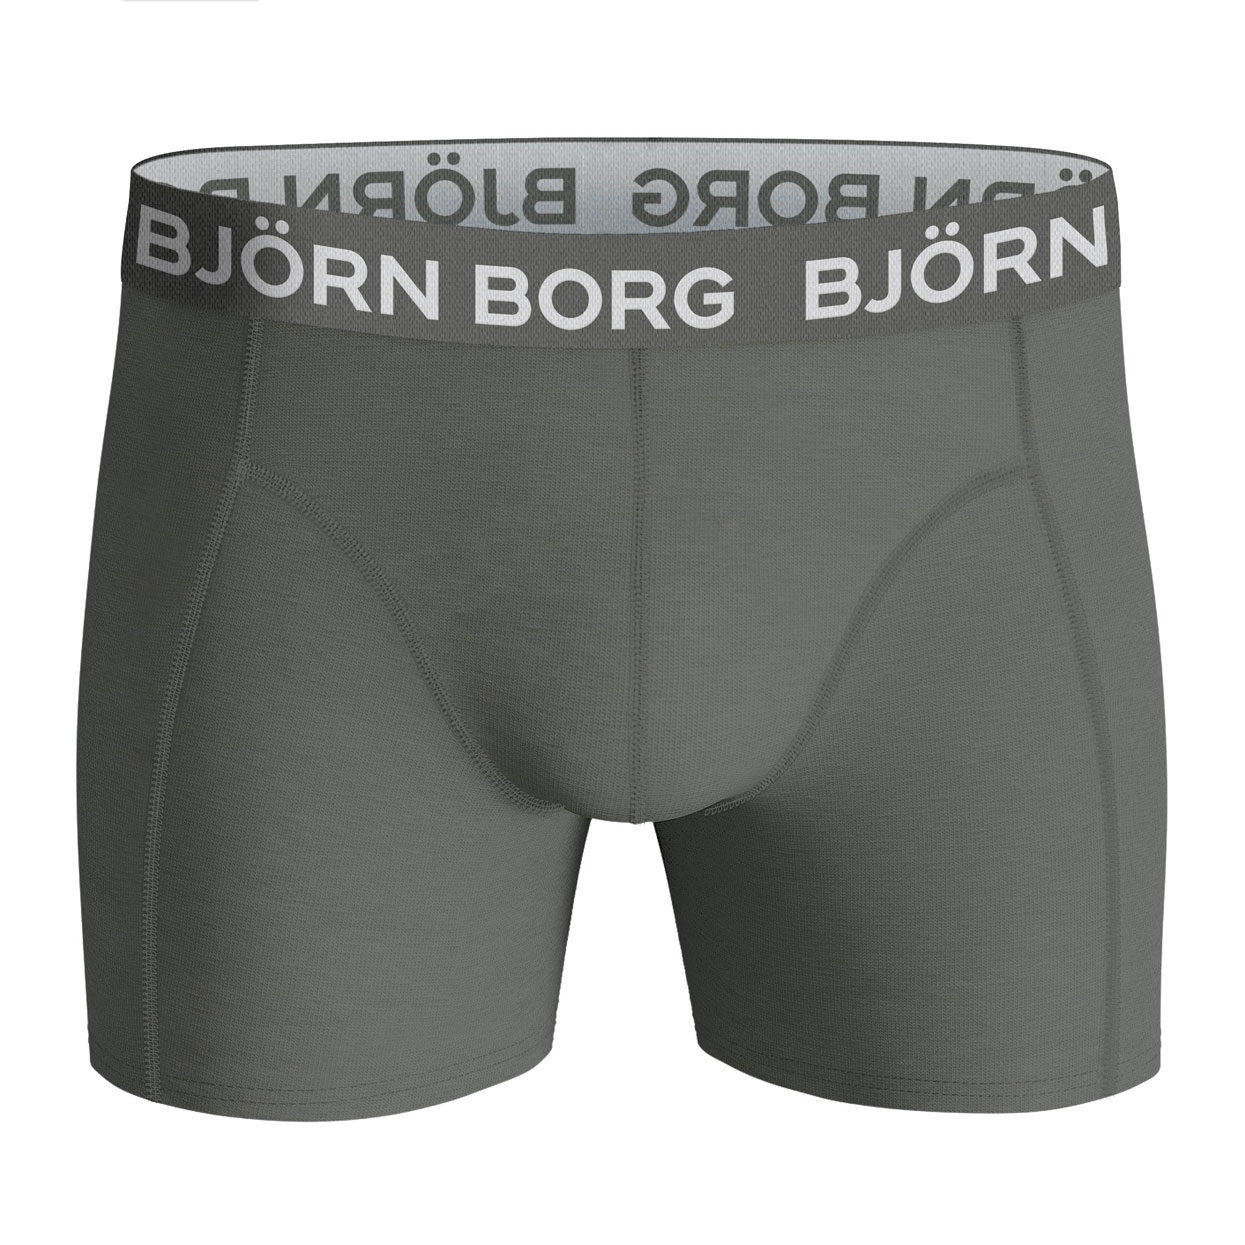 Bjorn-Borg-10002104-mp001-grey